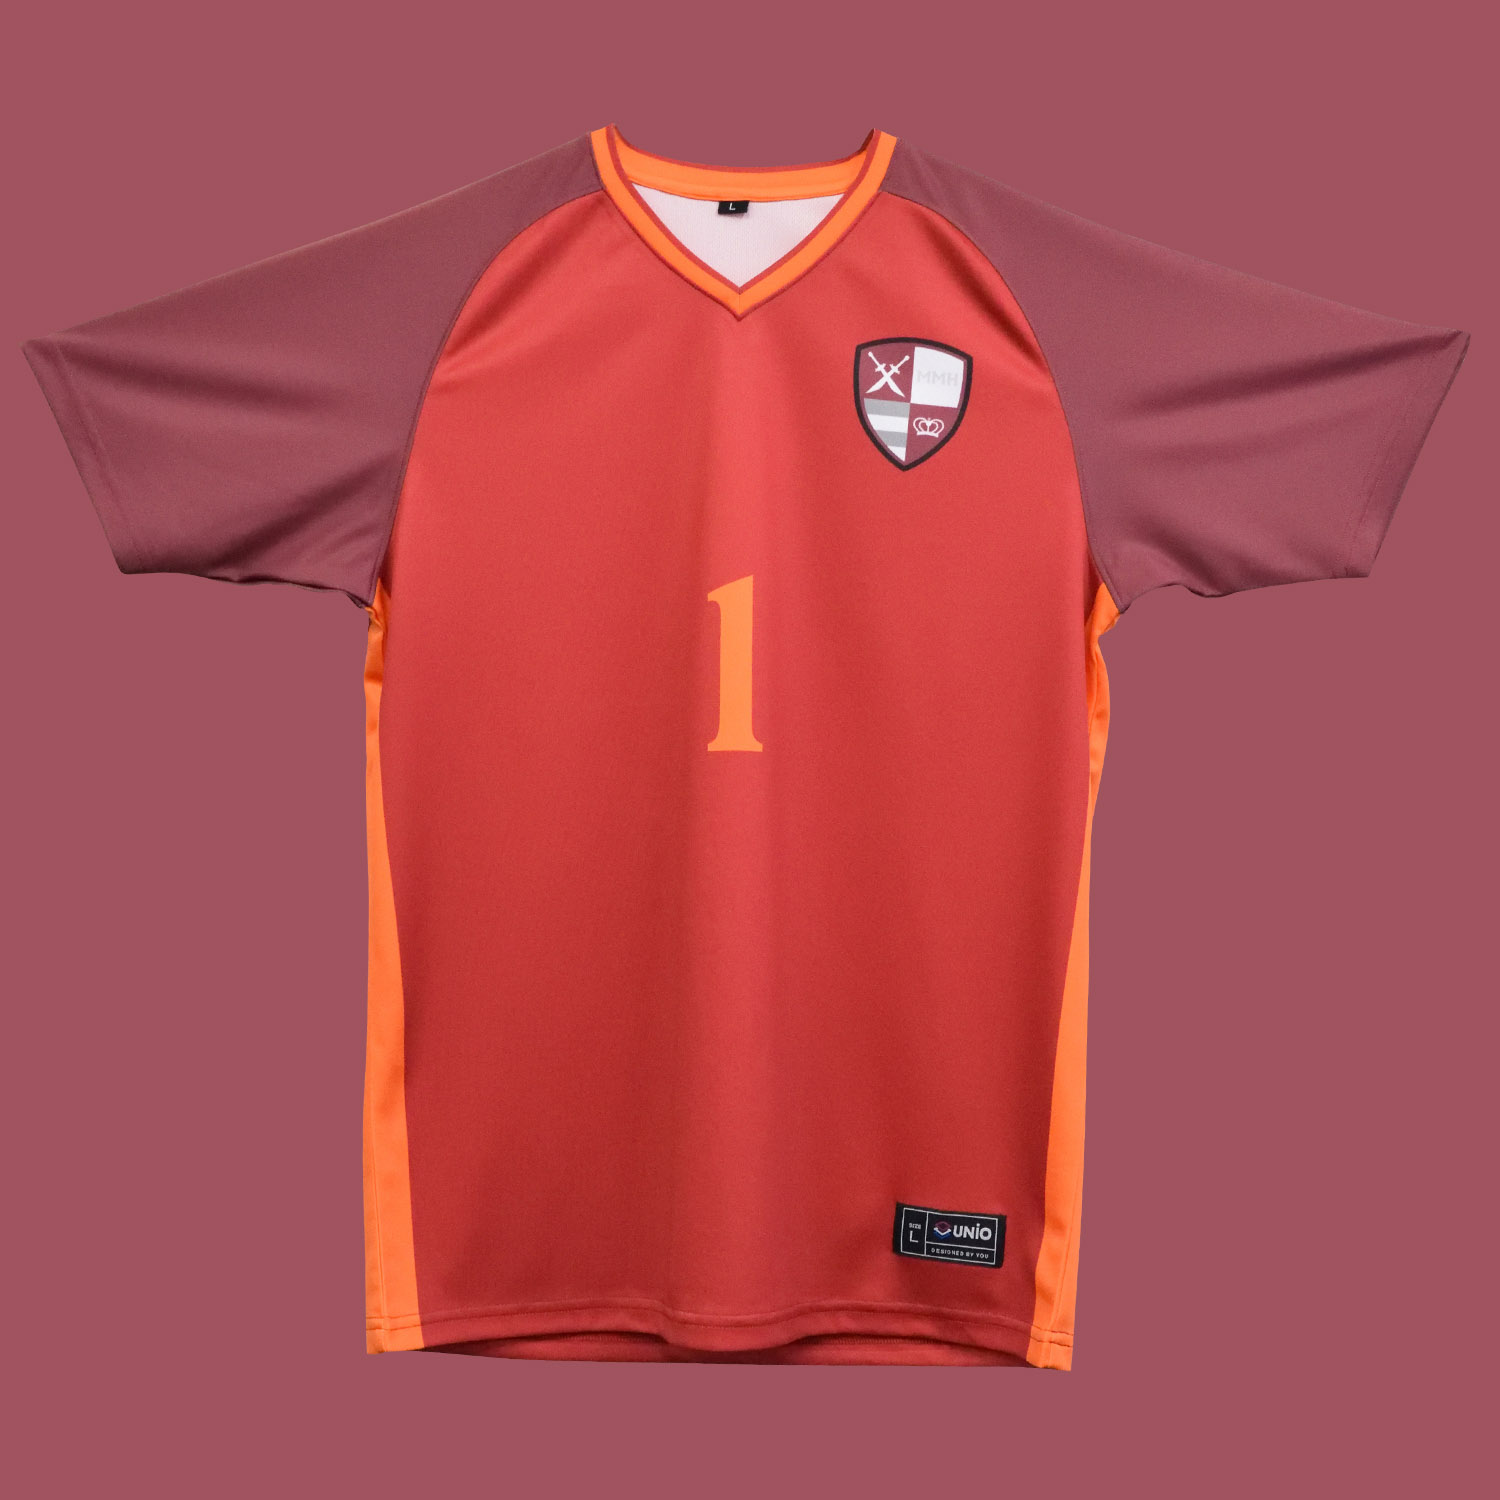 オレンジのラインがオシャレなサッカーユニフォーム Color Palette サッカーユニフォーム フットサルユニフォーム Unio